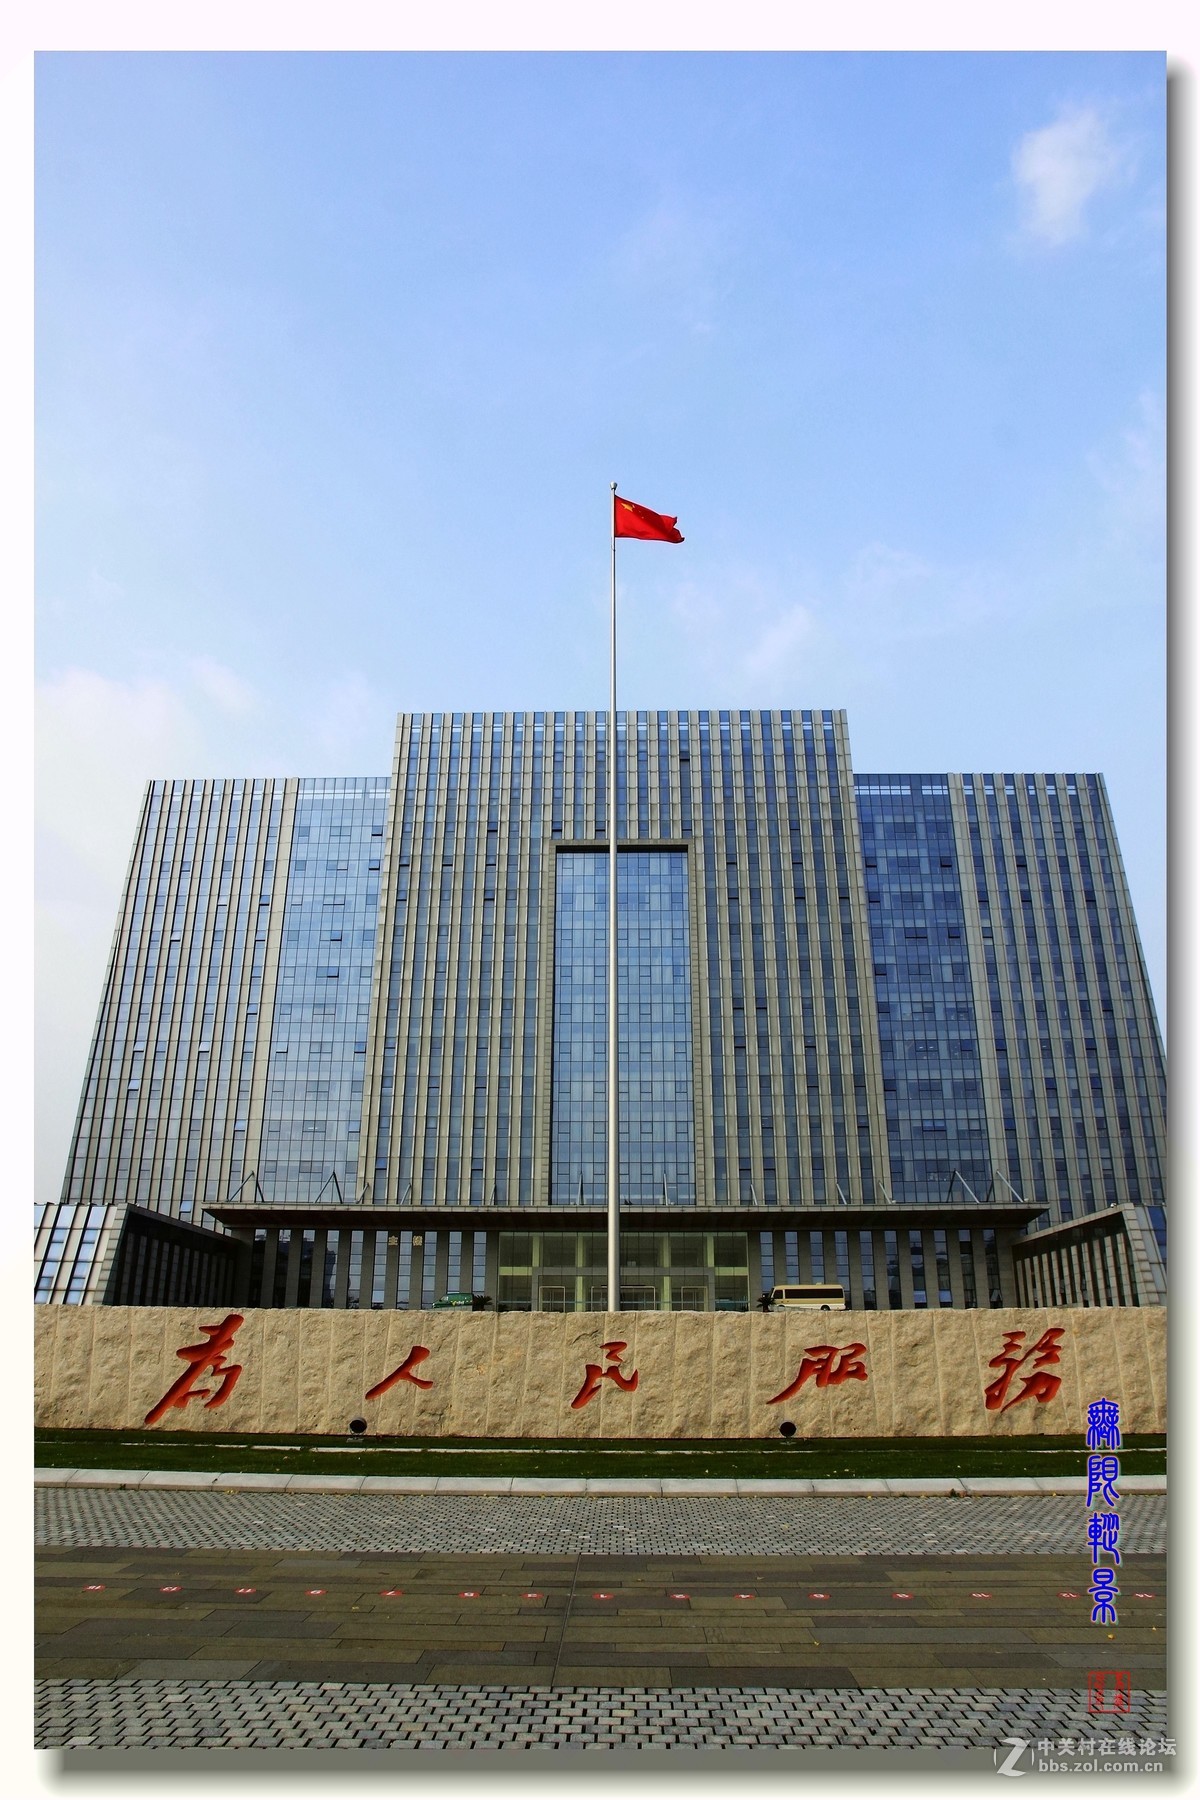 沛县县政府大楼图片